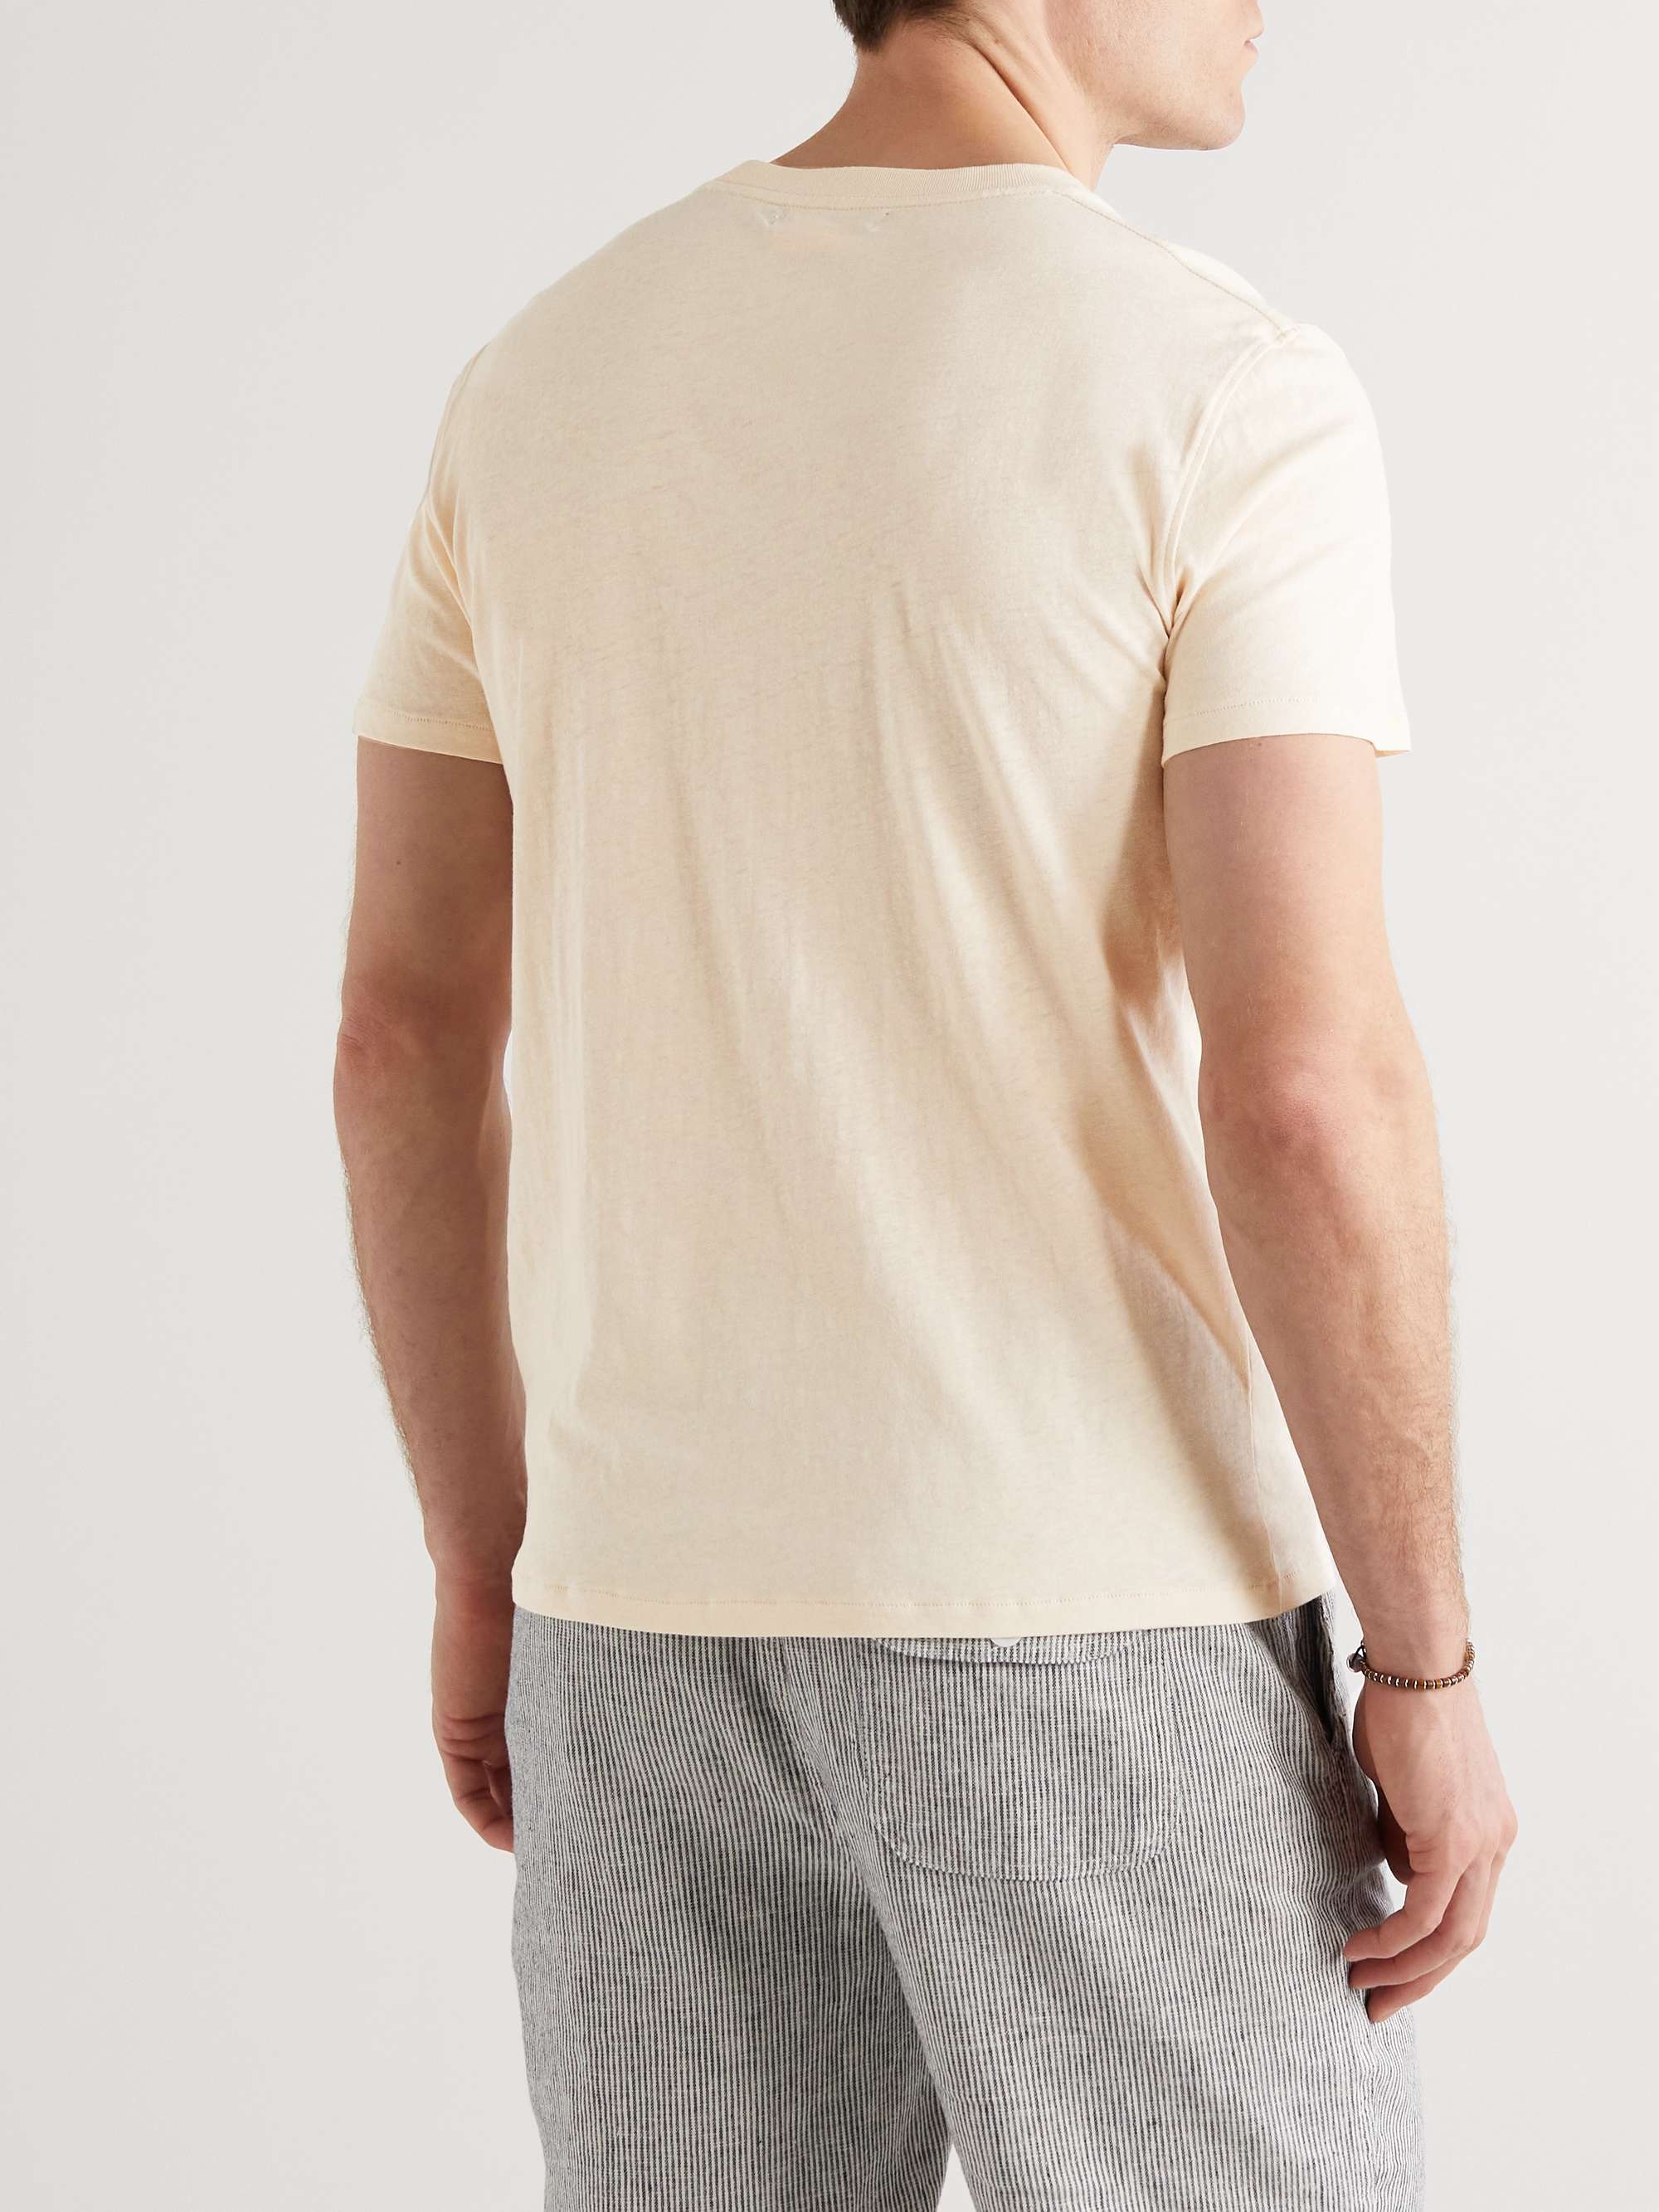 FRESCOBOL CARIOCA Slim-Fit Cotton and Linen-Blend Jersey T-Shirt